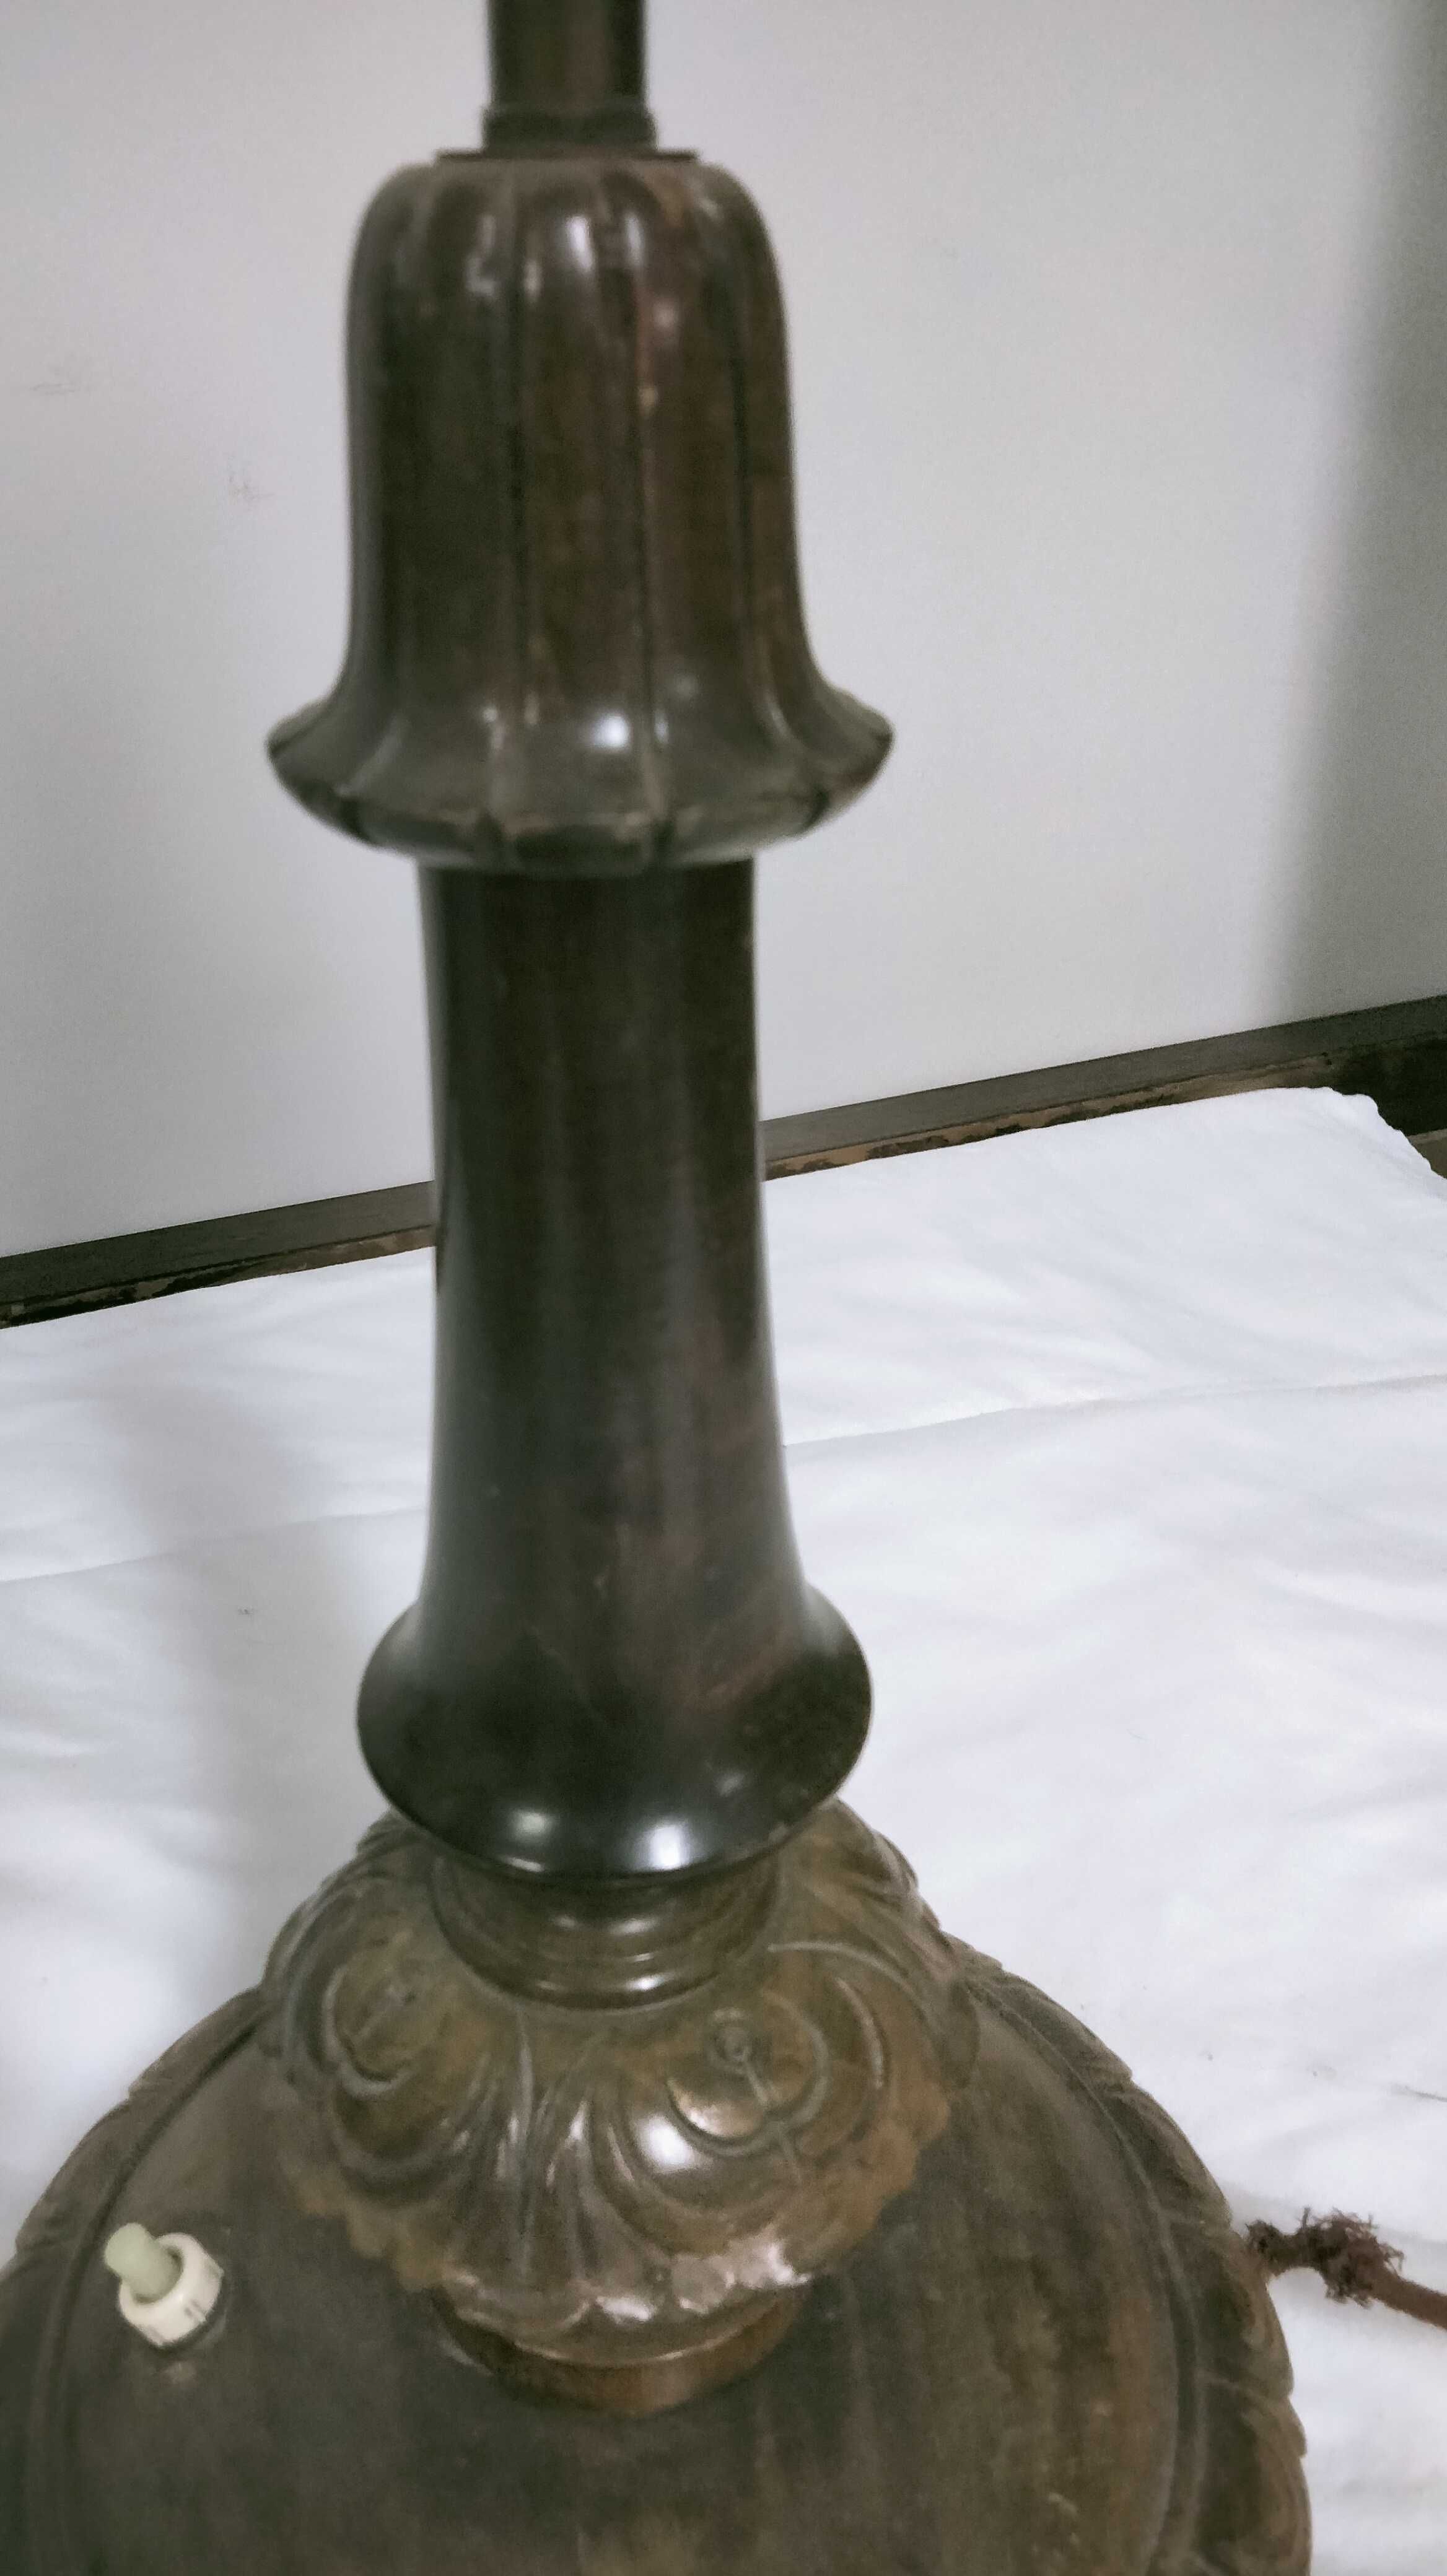 Stara stylowa lampa.